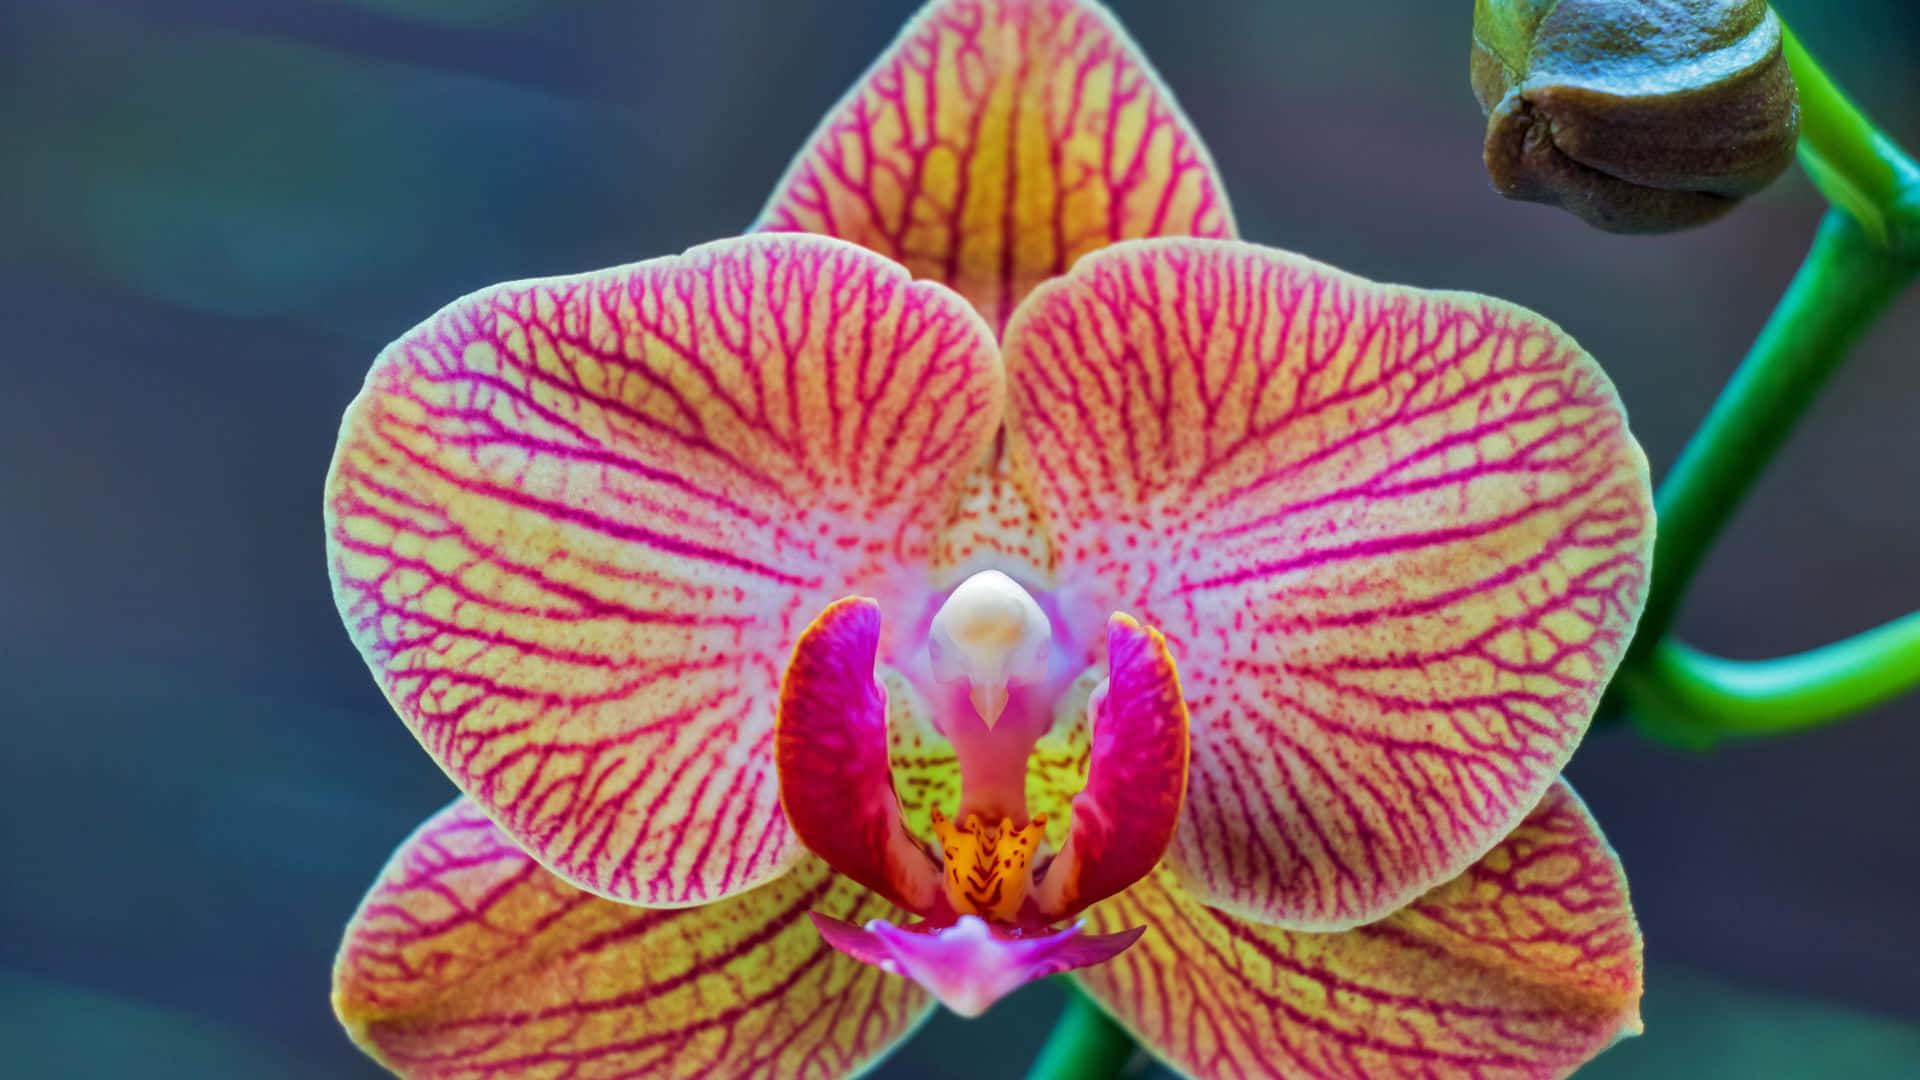 Unaflor De Orquídea Rosa Y Amarilla Está En Una Planta